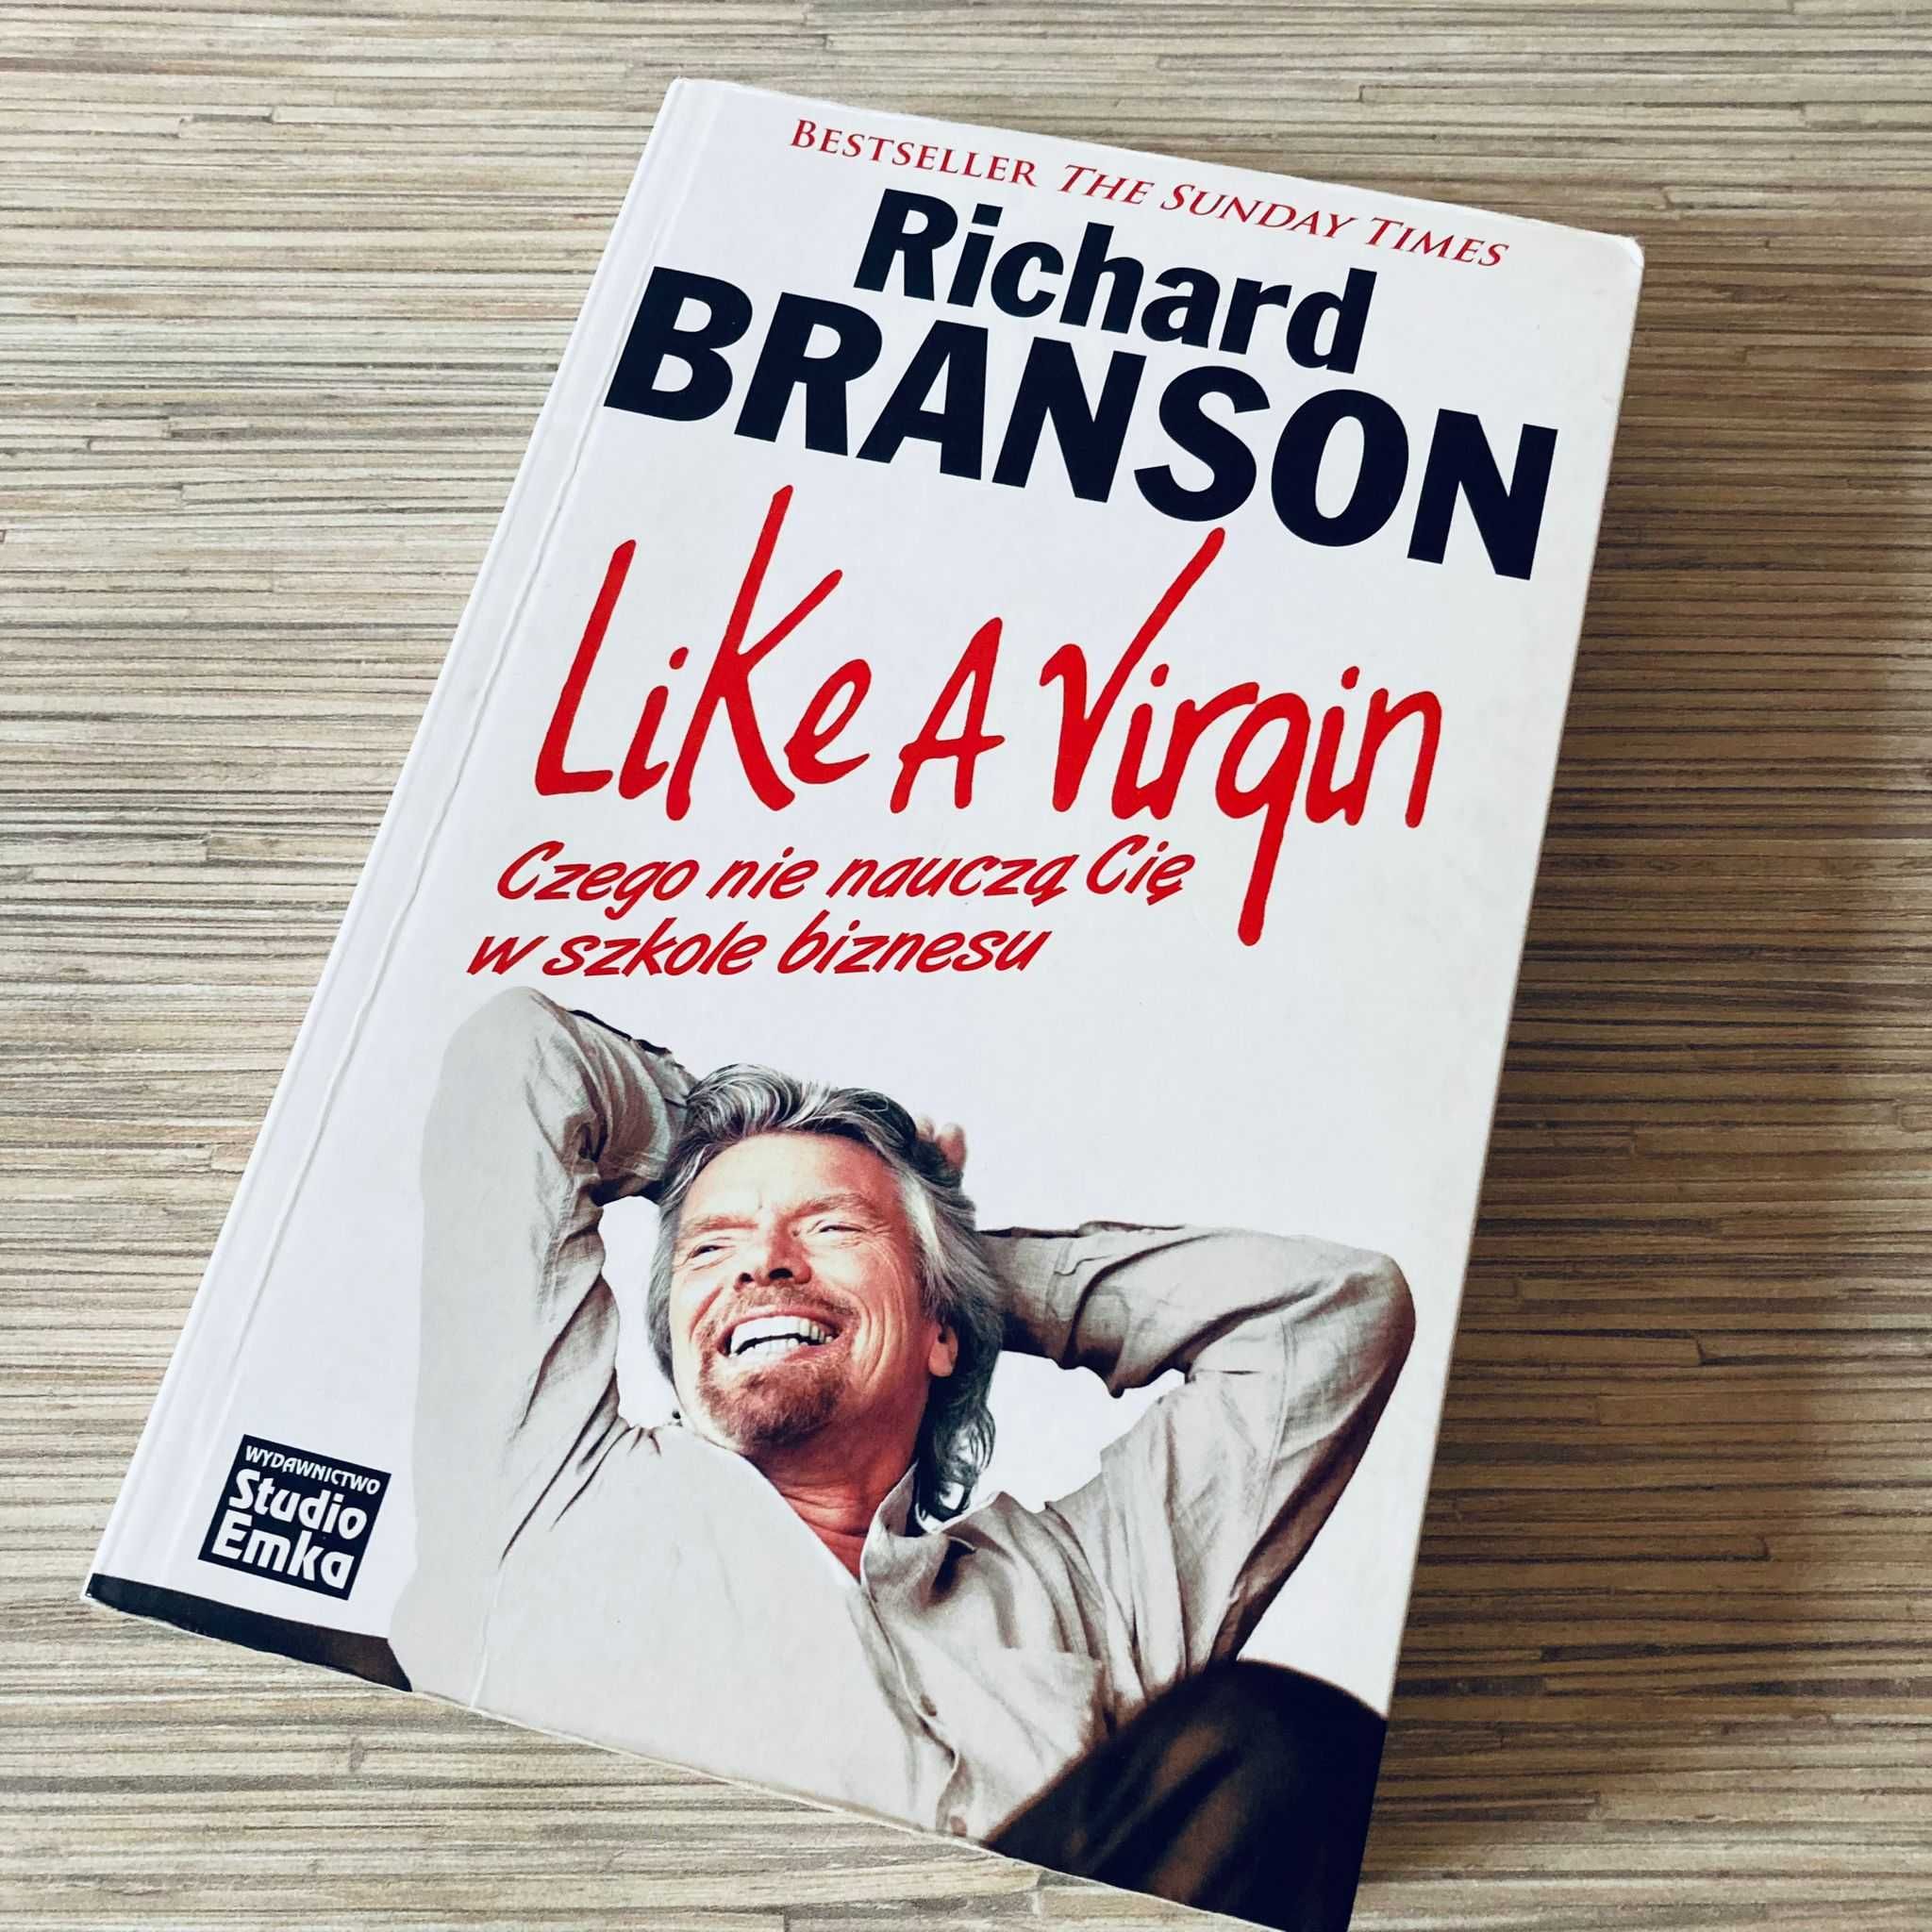 Richard Branson - Like a Virgin czego nie nauczysz się w szkole